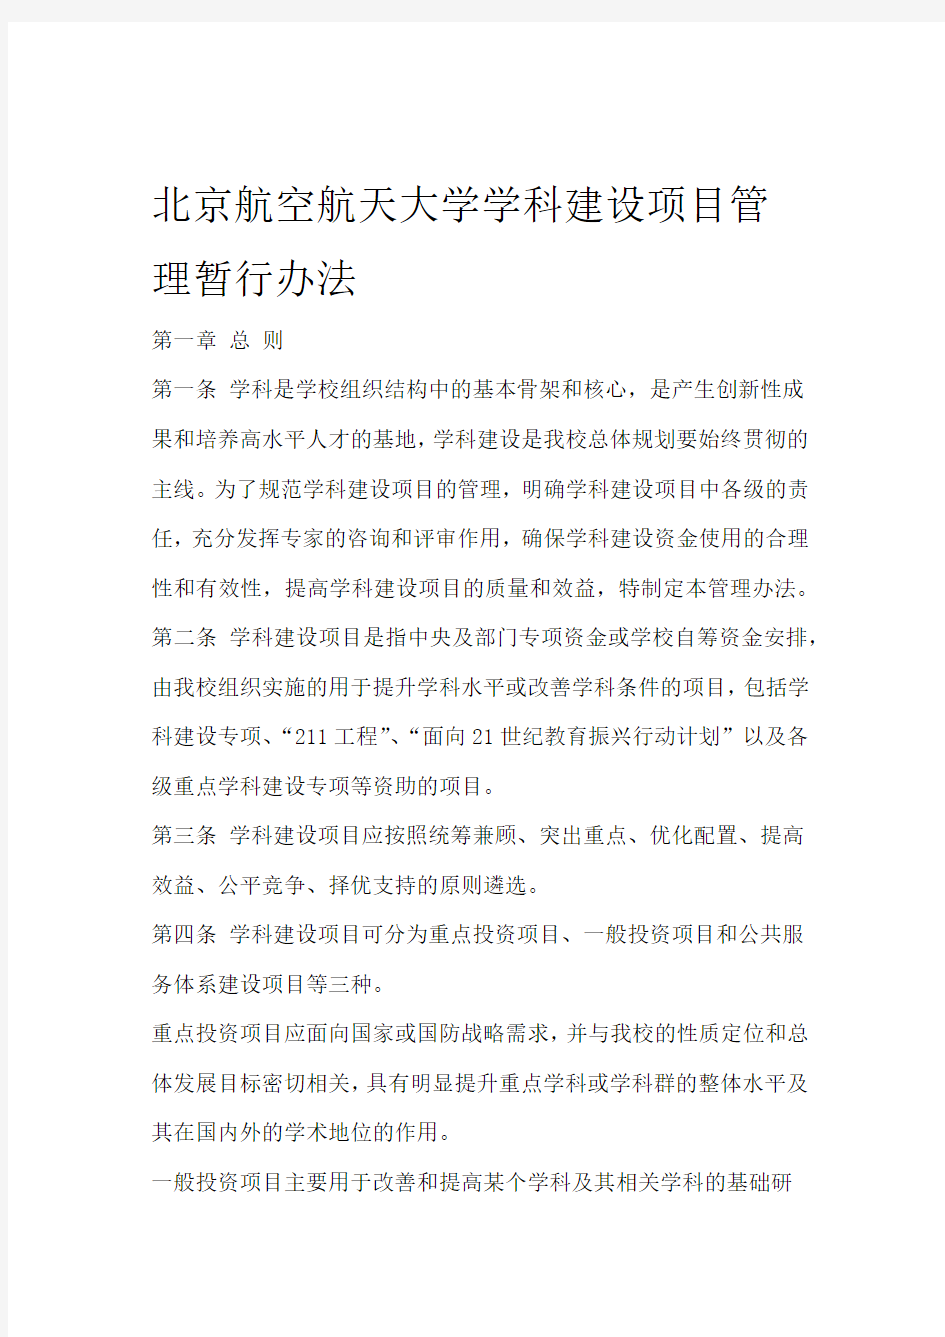 北京航空航天大学学科建设项目管理暂行办法